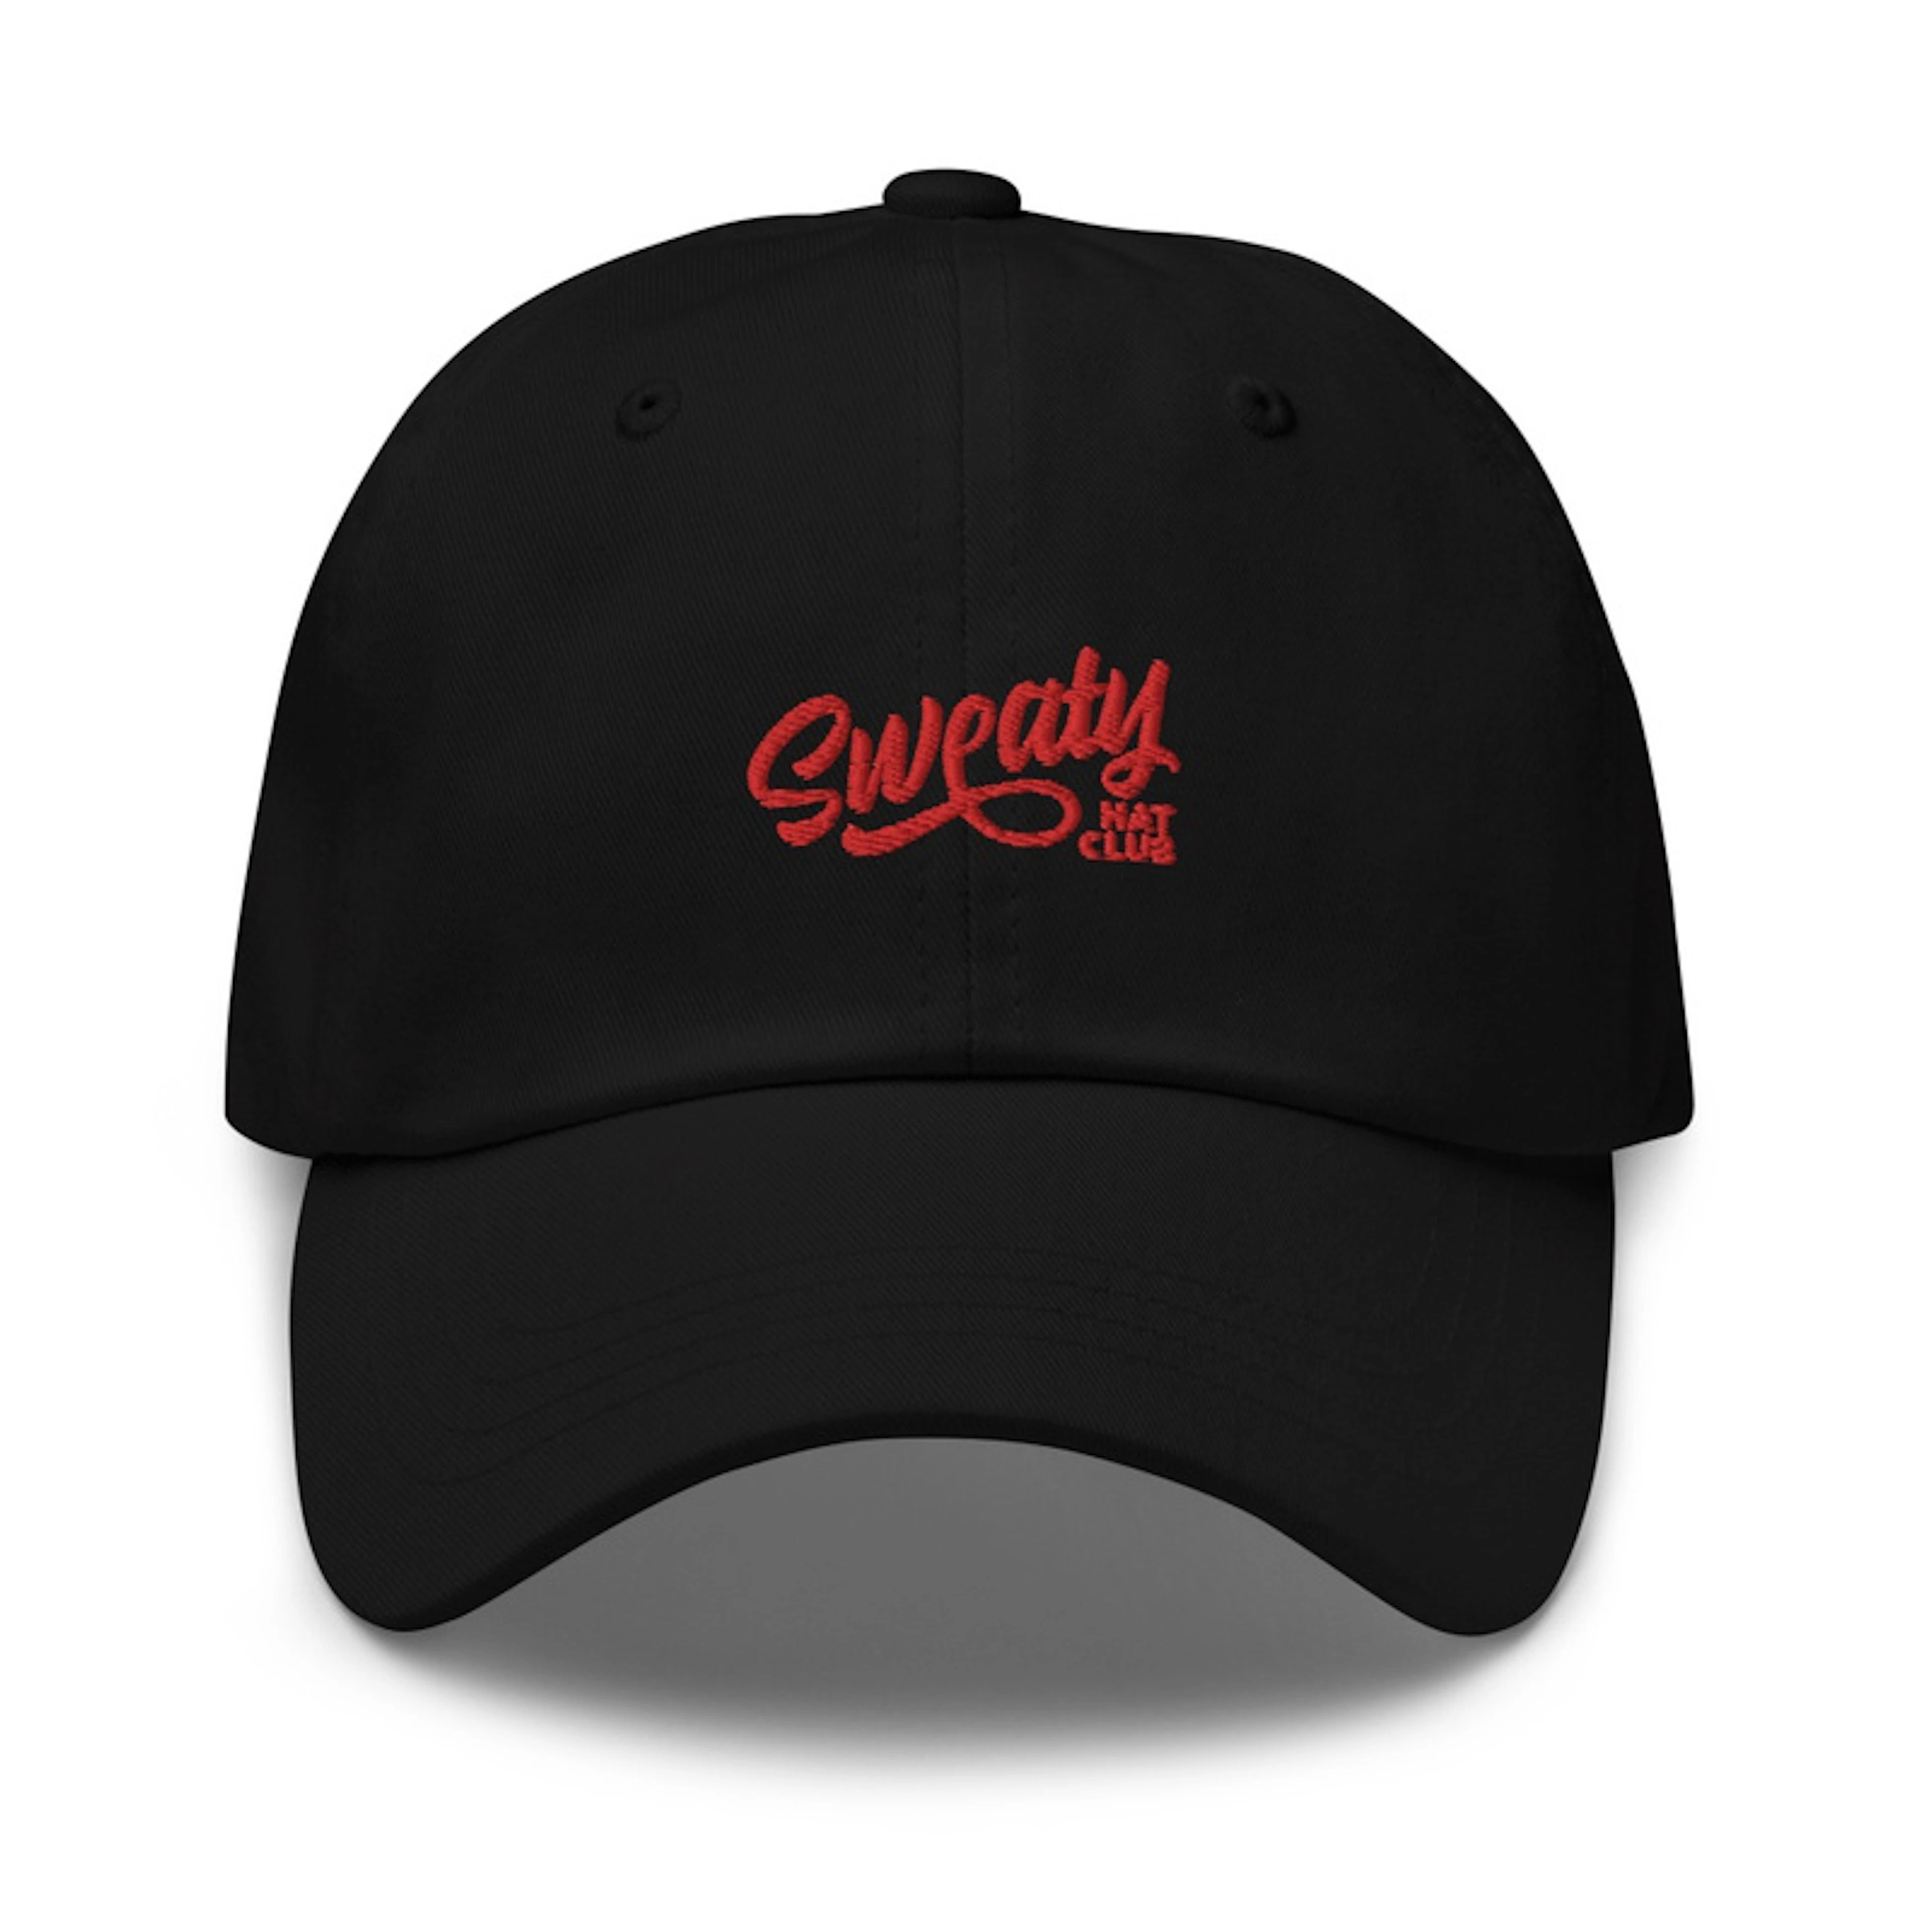 Sweaty Hat Club Members Hat